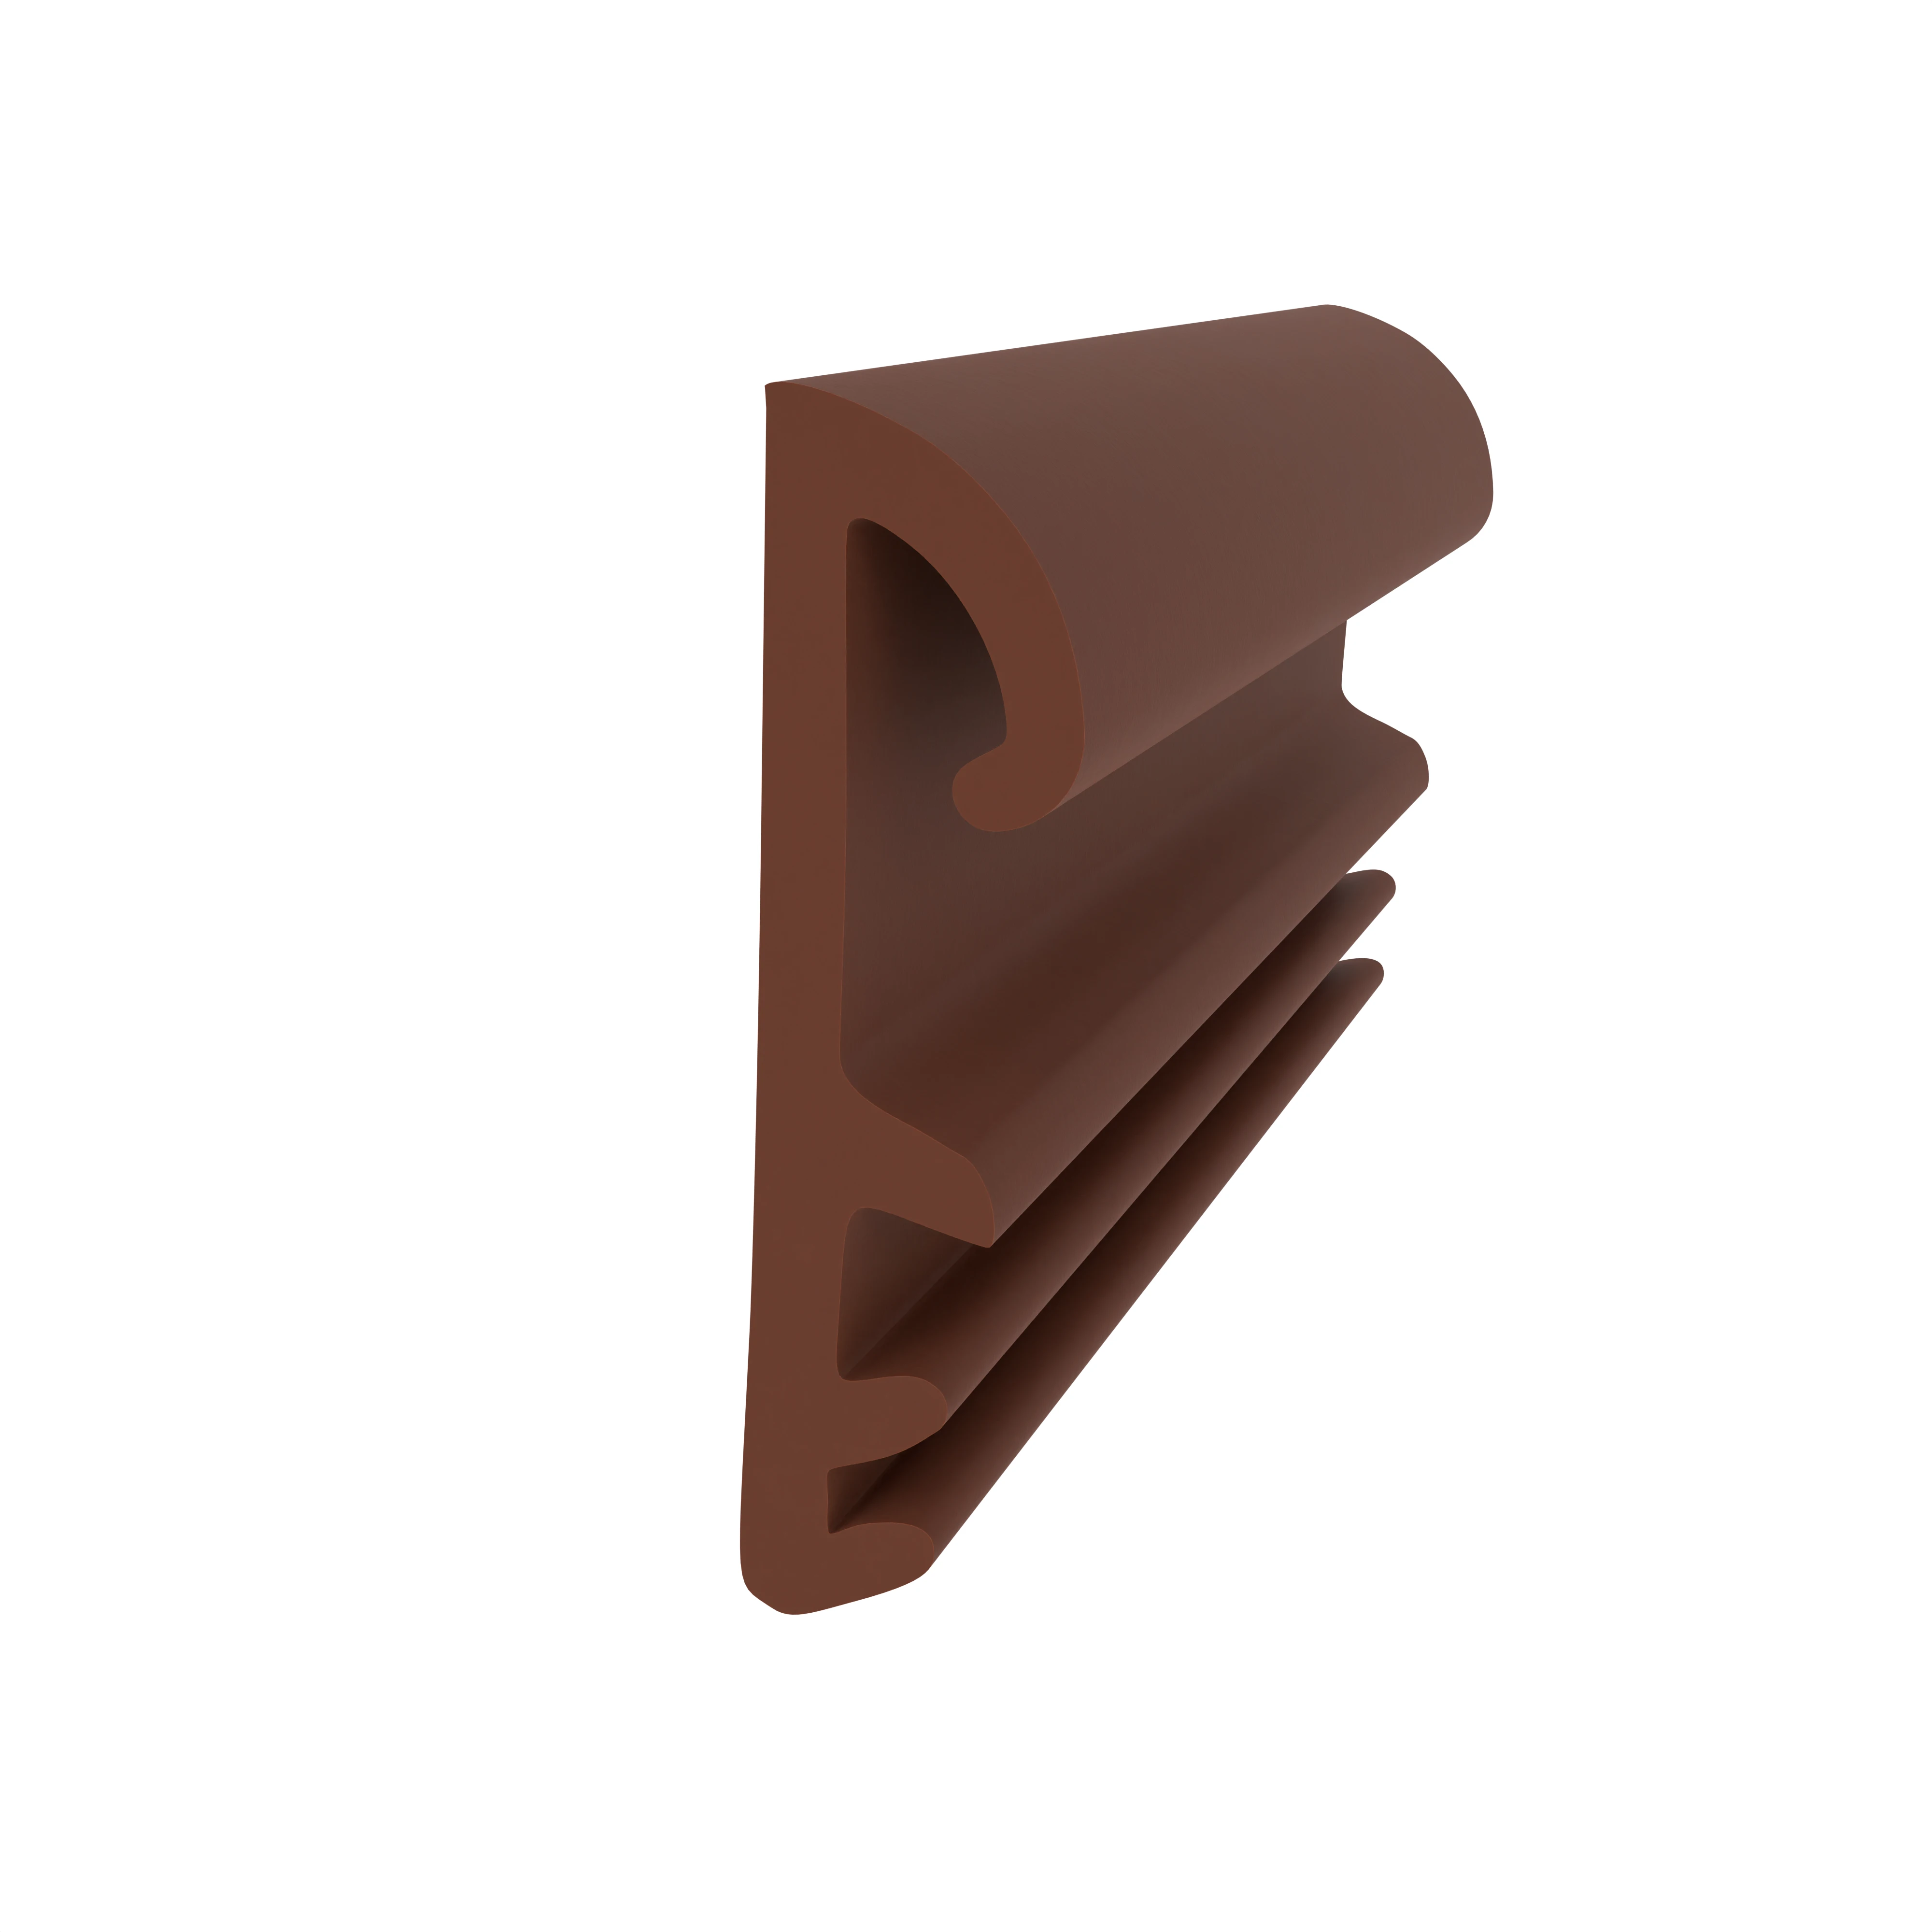 Flügelfalzdichtung für Holzflügel und -zargen | 12 mm Falzhöhe | Farbe: braun